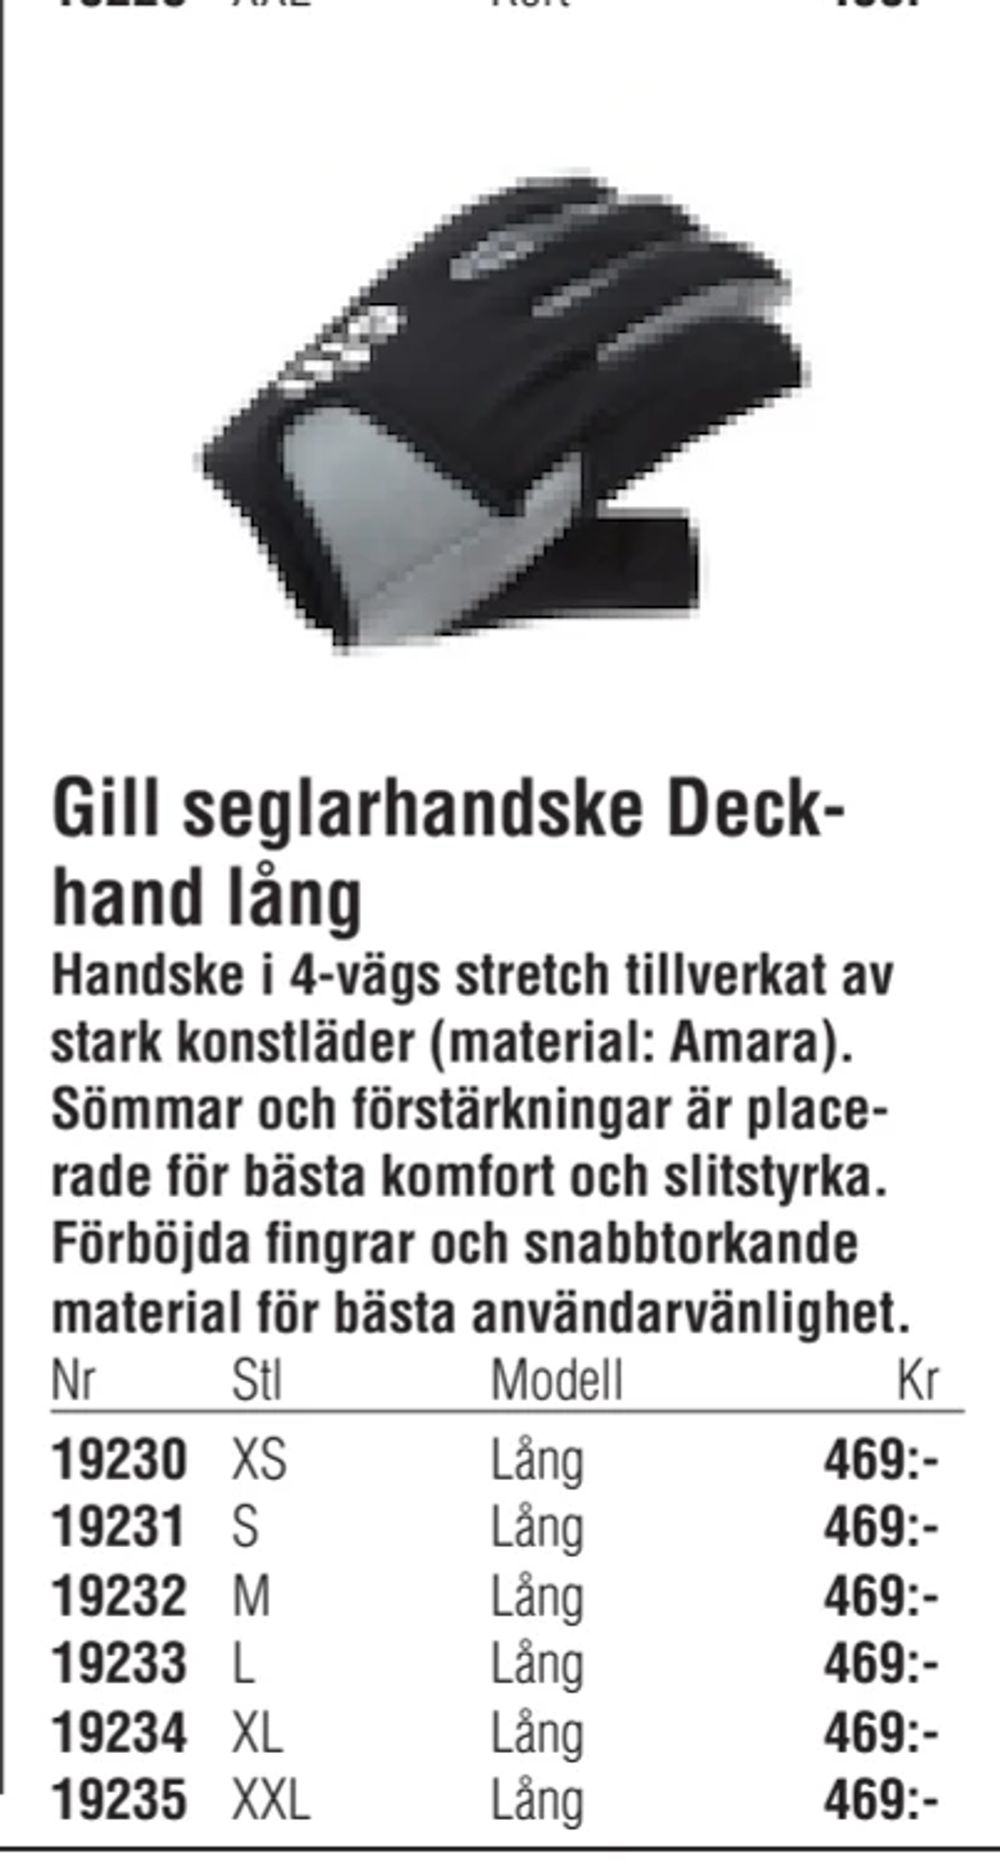 Erbjudanden på Gill seglarhandske Deckhand lång från Erlandsons Brygga för 469 kr